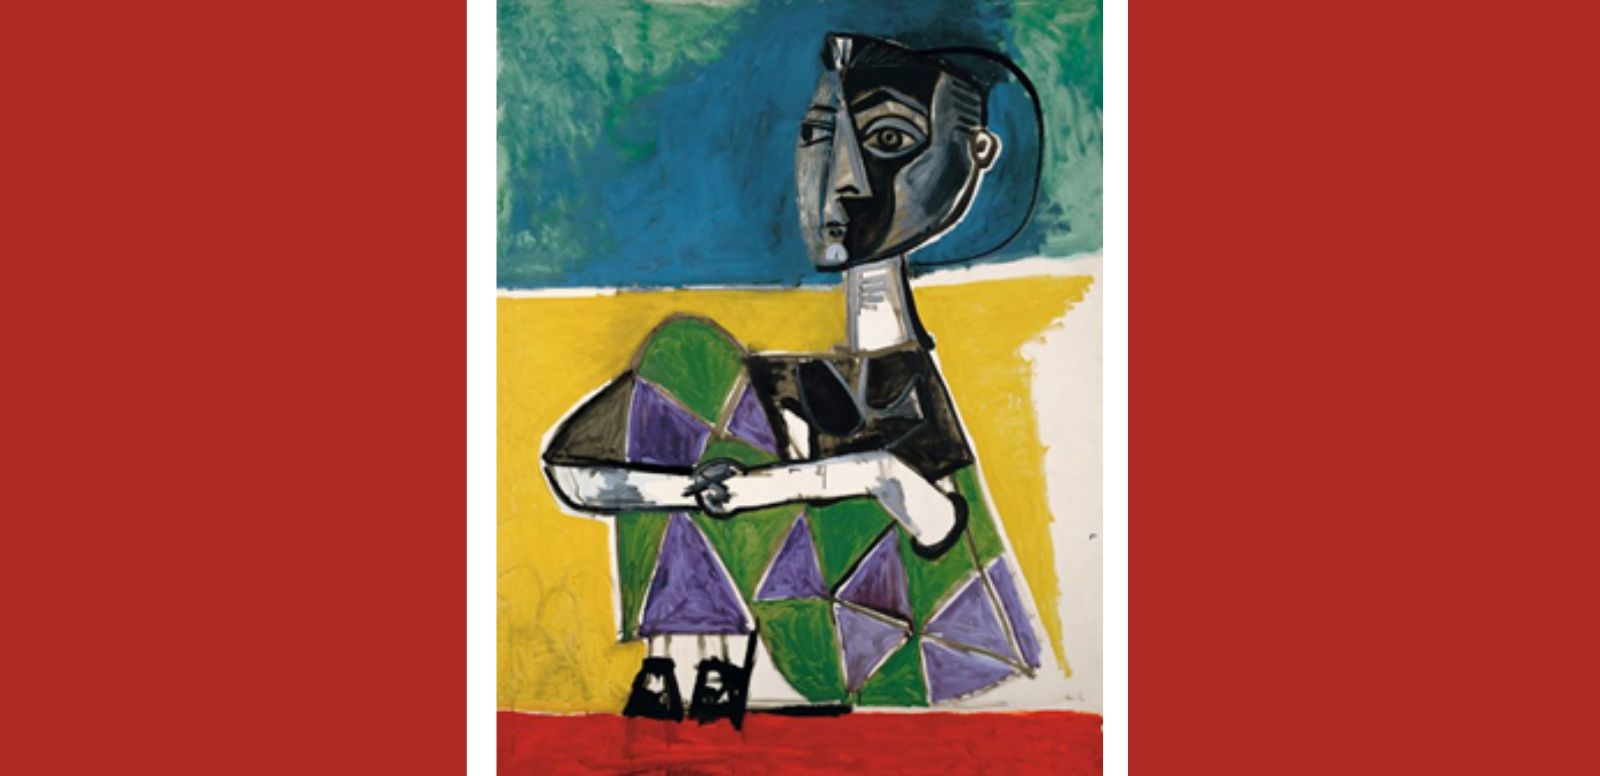 Pablo Picasso "Jacqueline sentada", 1954